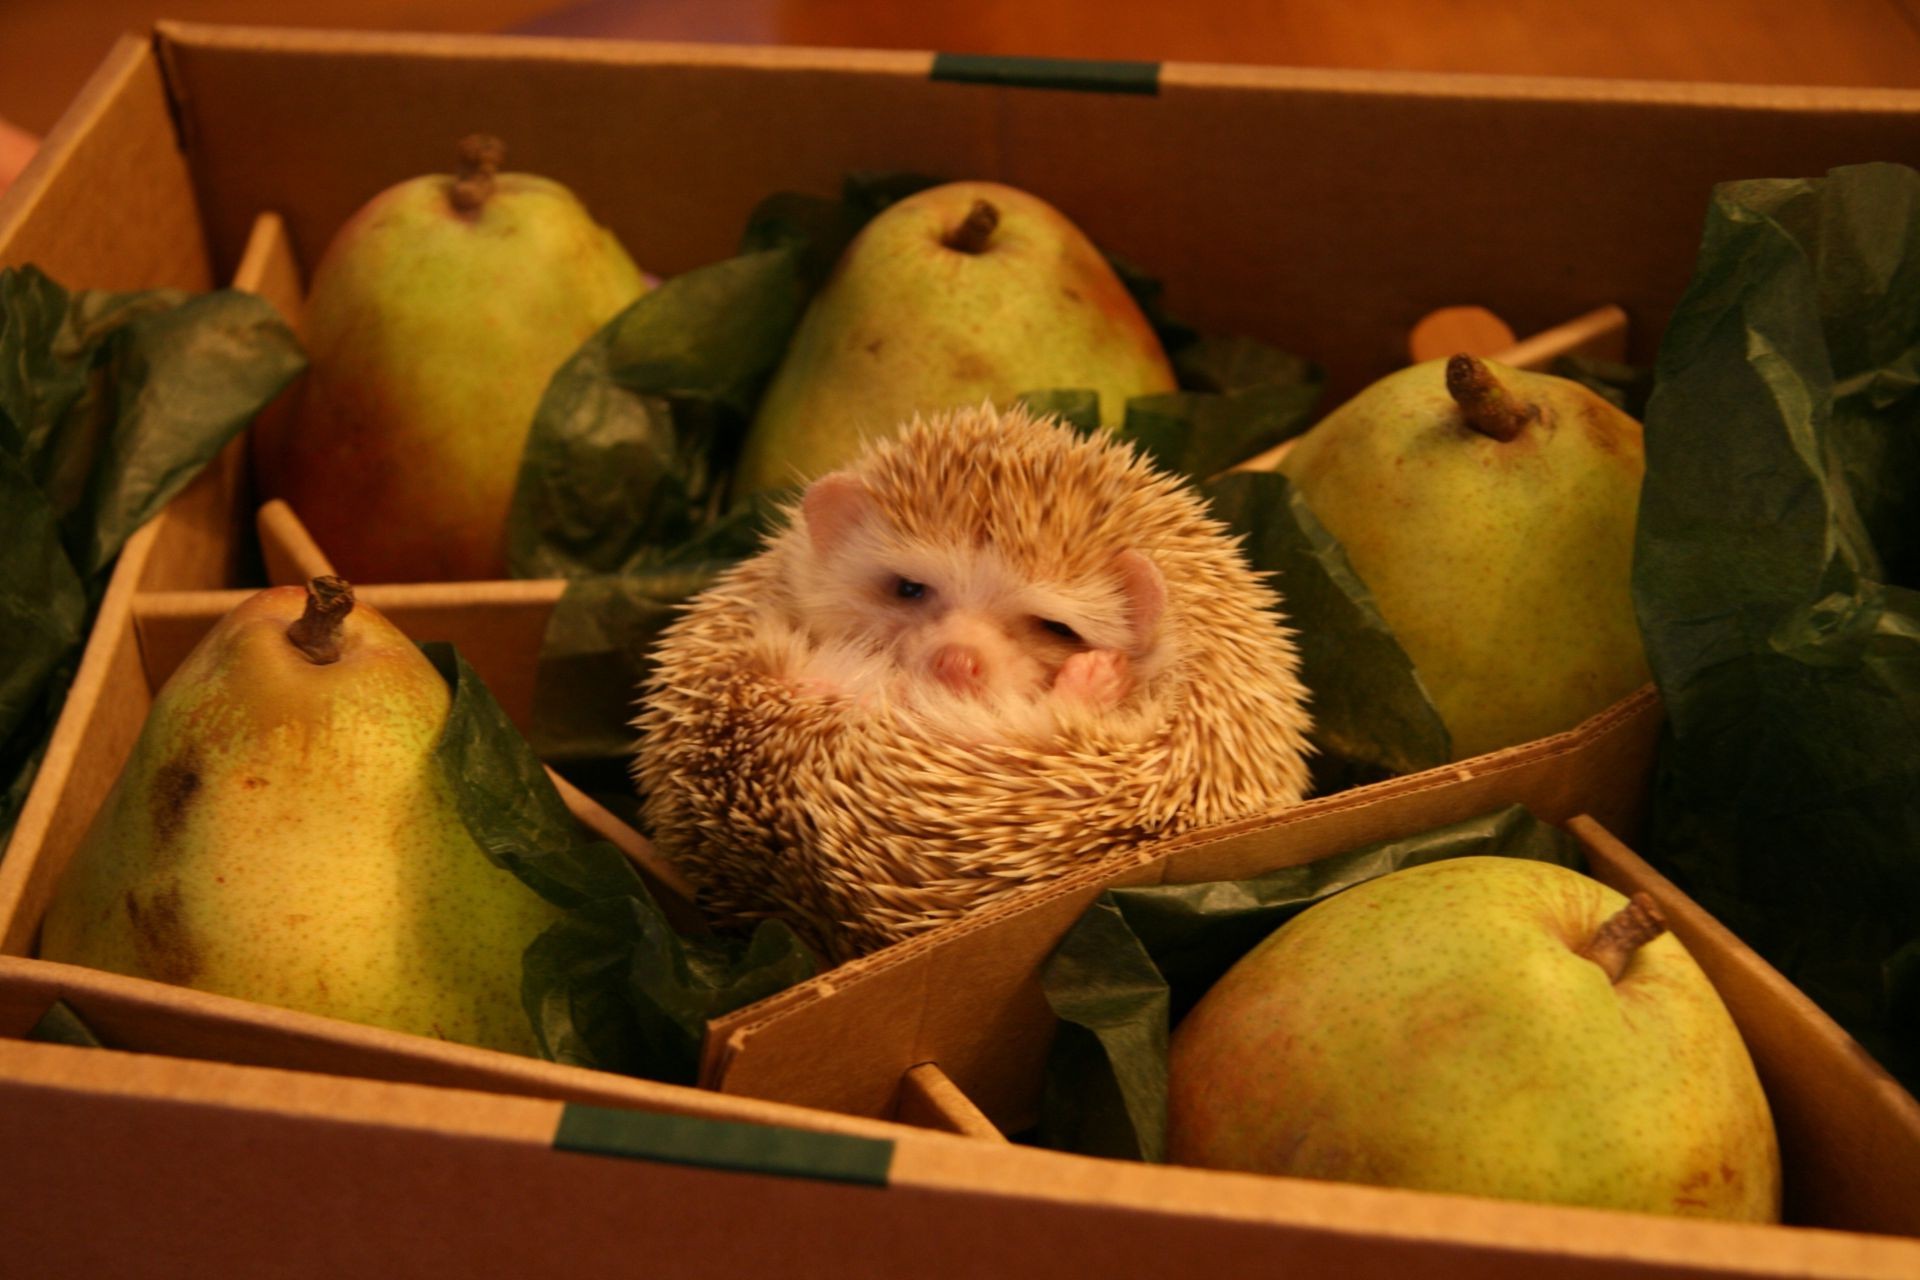 животные расти яблоко натюрморт еда фрукты один в помещении контейнер корнеплод ребенок